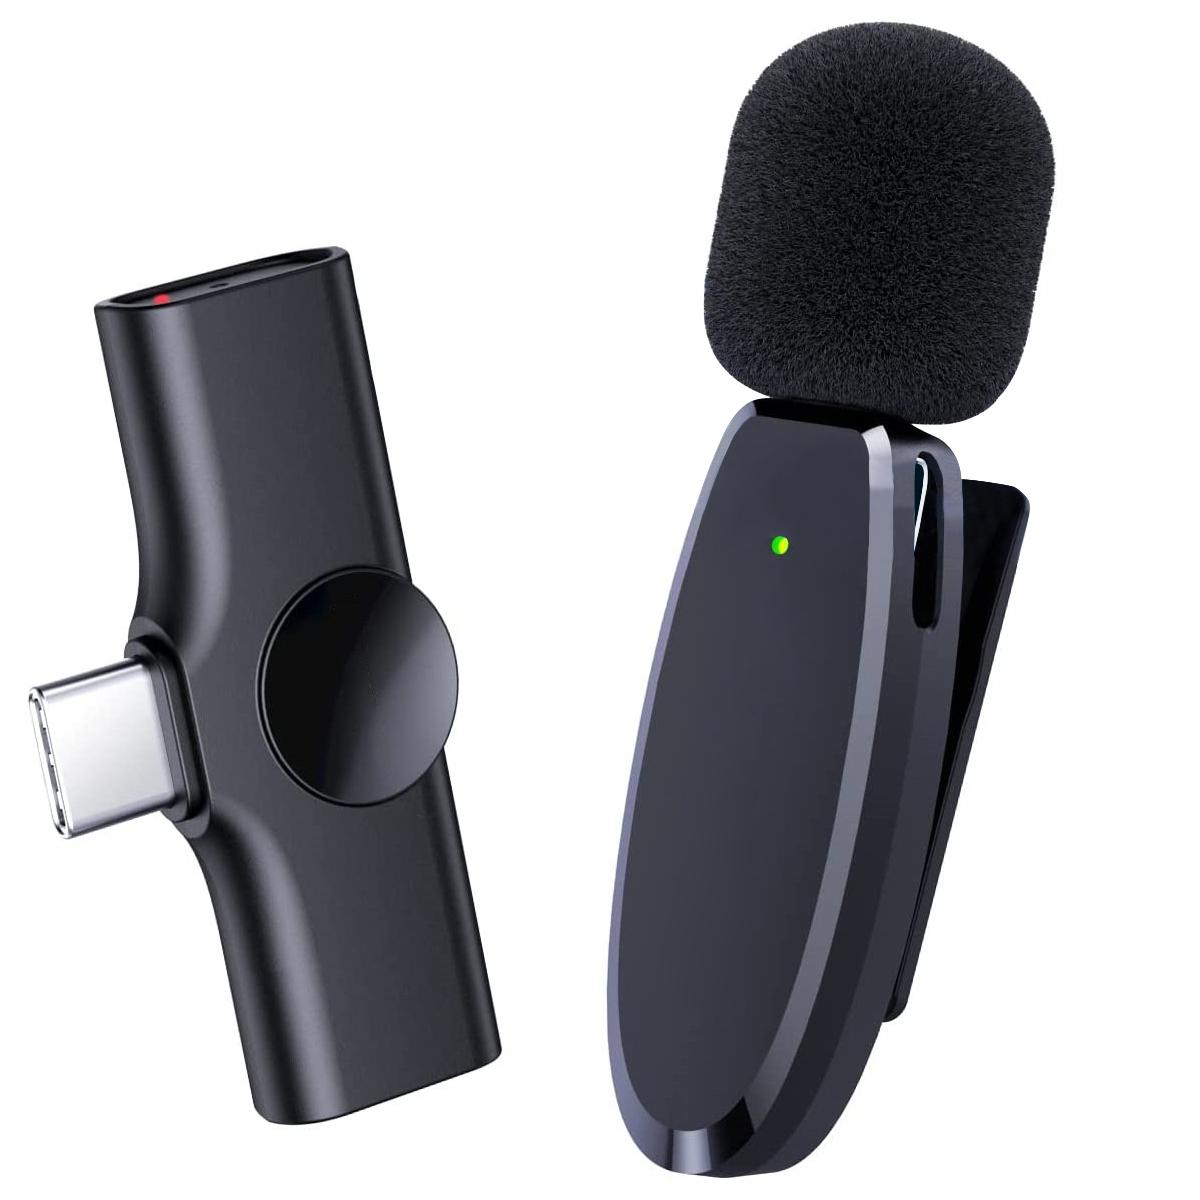 AP004 Micrófono lavalier inalámbrico para Android - Mini micrófono lavalier  inalámbrico USB C para grabación, videos de , transmisión en vivo,  vlogging (no se requiere aplicación ni Bluetooth) - K&F Concept